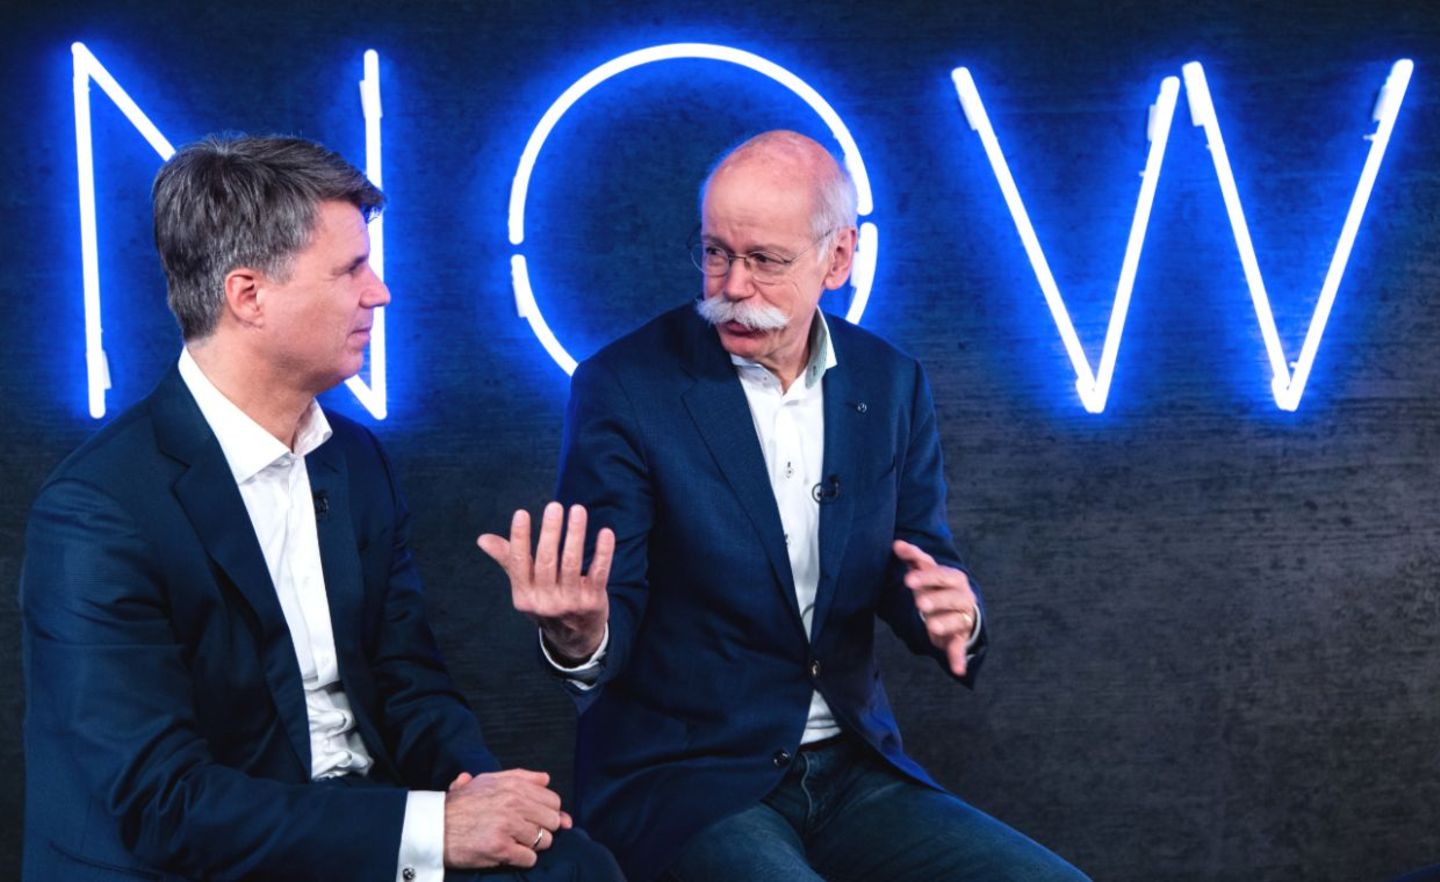 BMW-Chef Harald Krüger und Daimler-Chef Dieter Zetsche sitzen anlässlich einer Pressekonferenz zum Start des gemeinschaftlichen Mobilitätsunternehmens von BMW und Daimler vor dem Schriftzug "NOW"